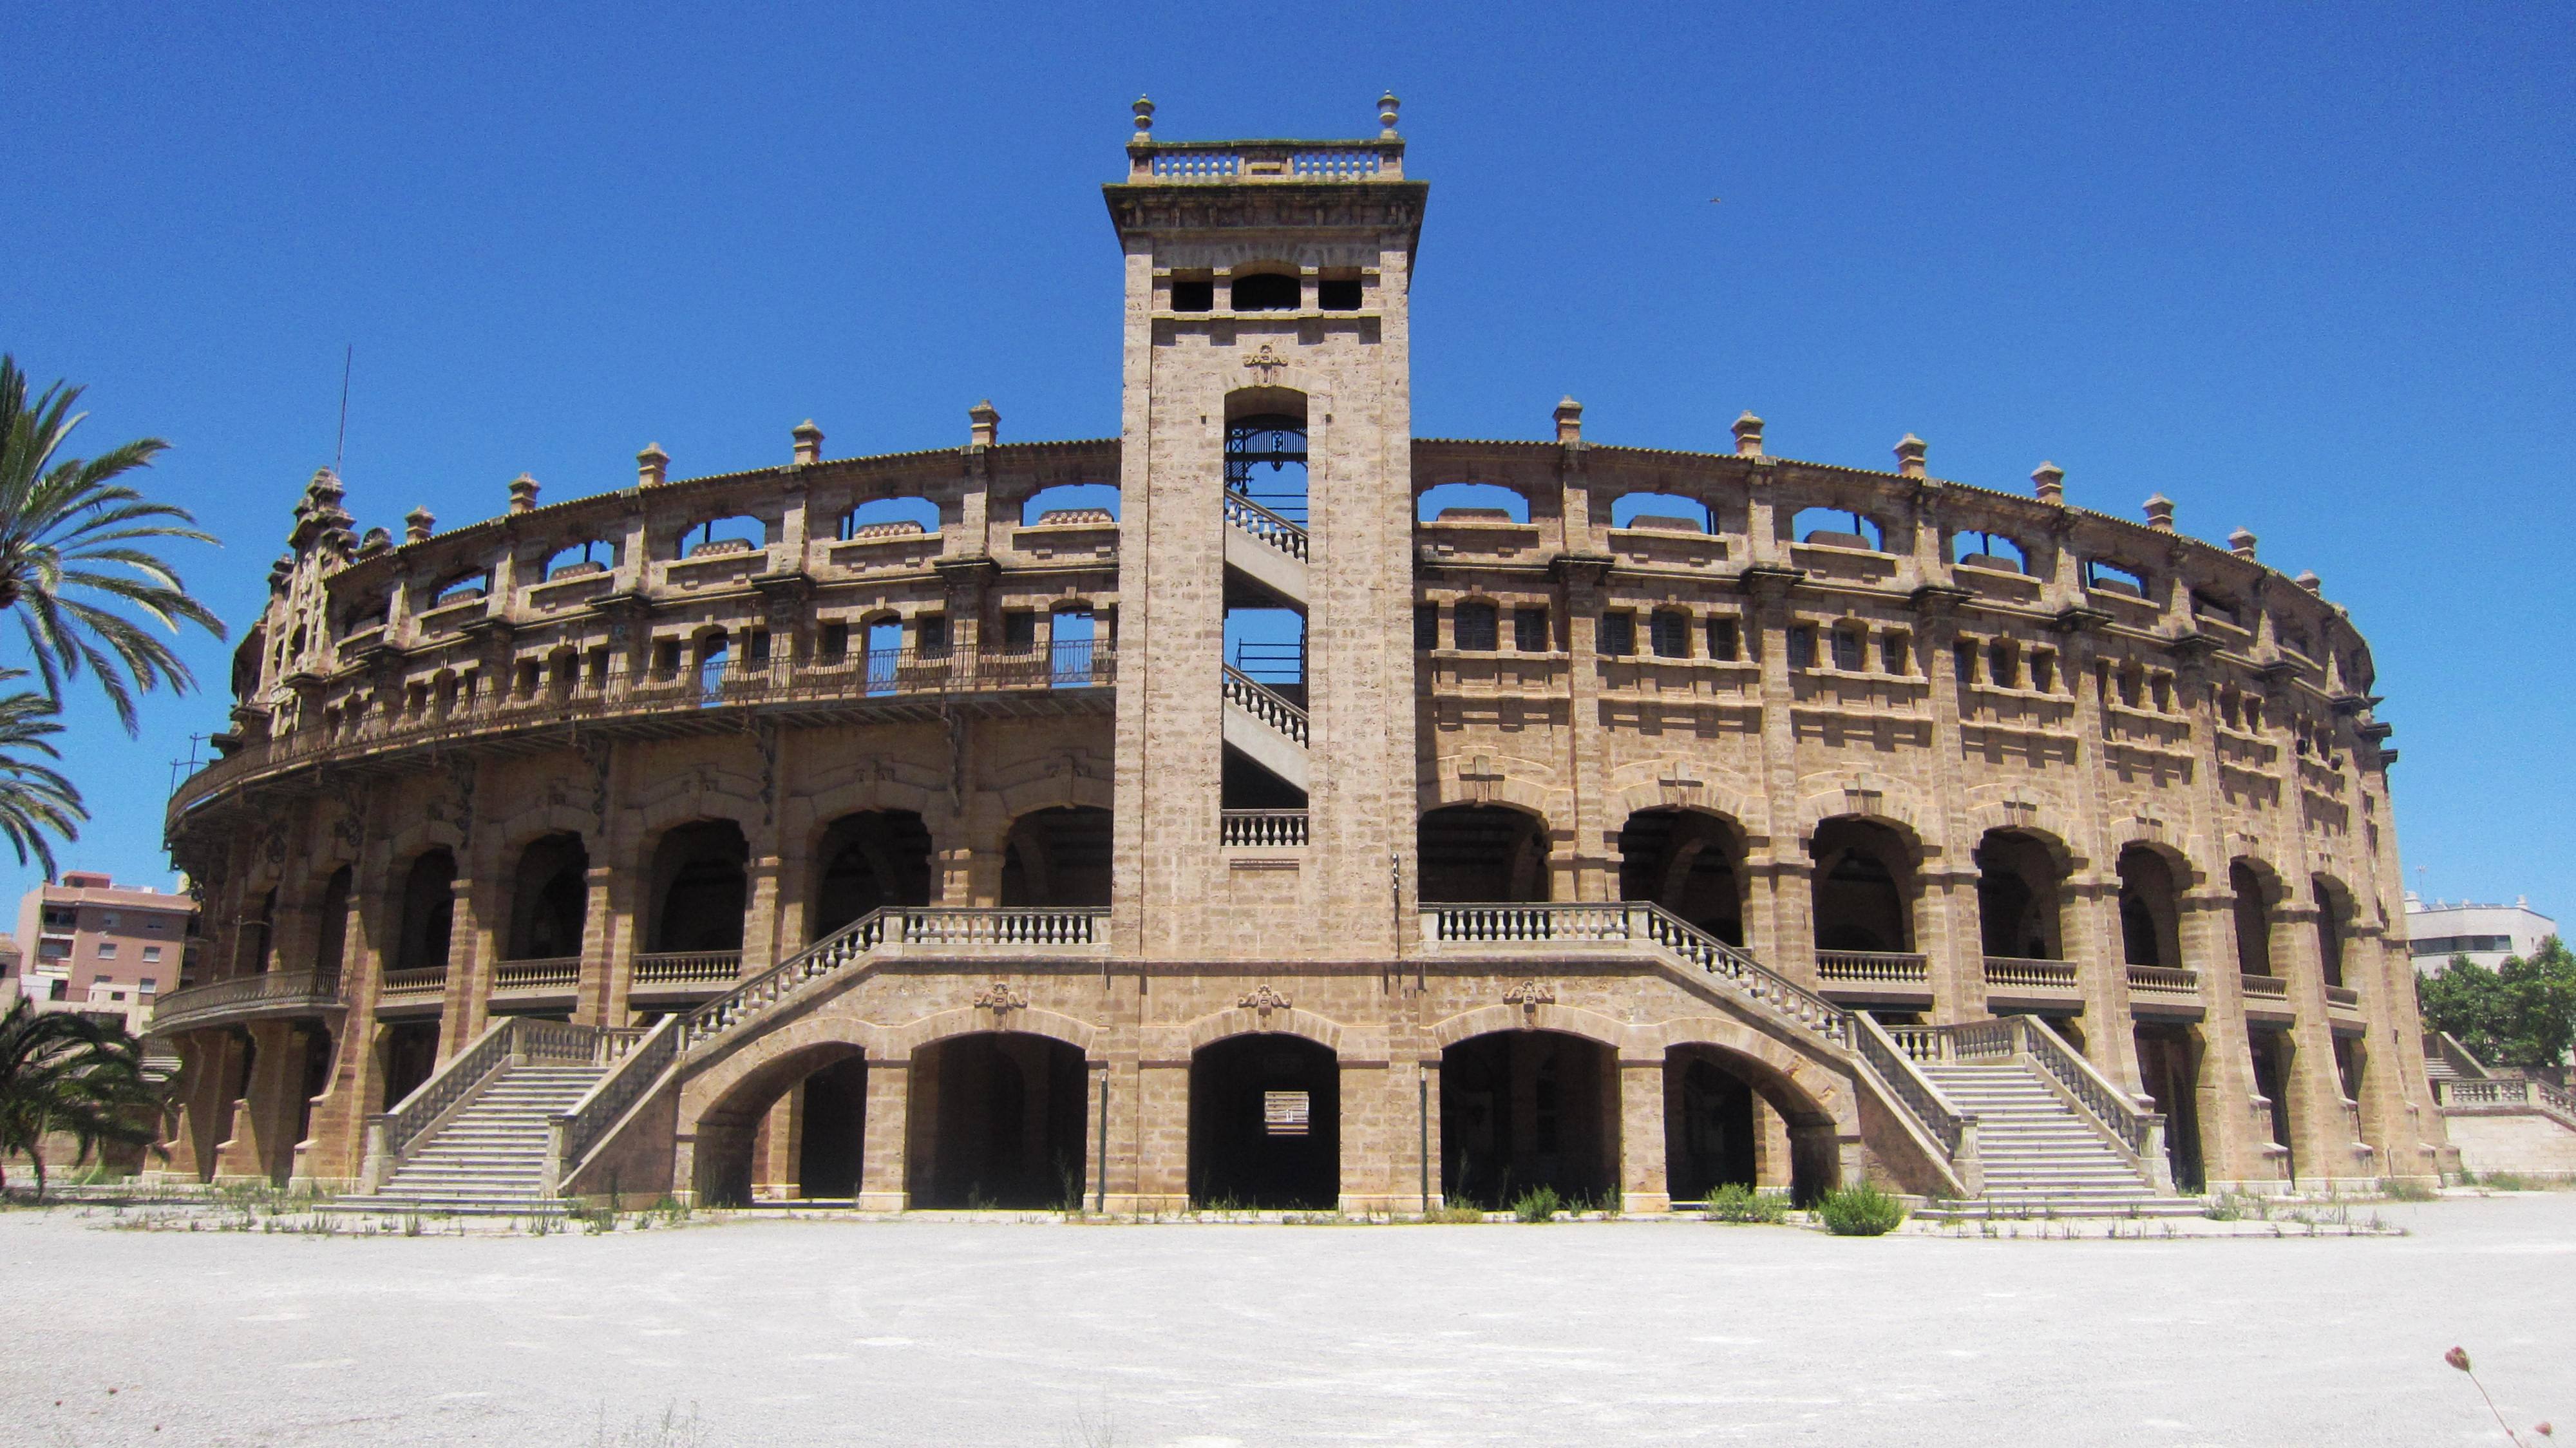 Plaza de Toros Palma (Coliseo Balear)